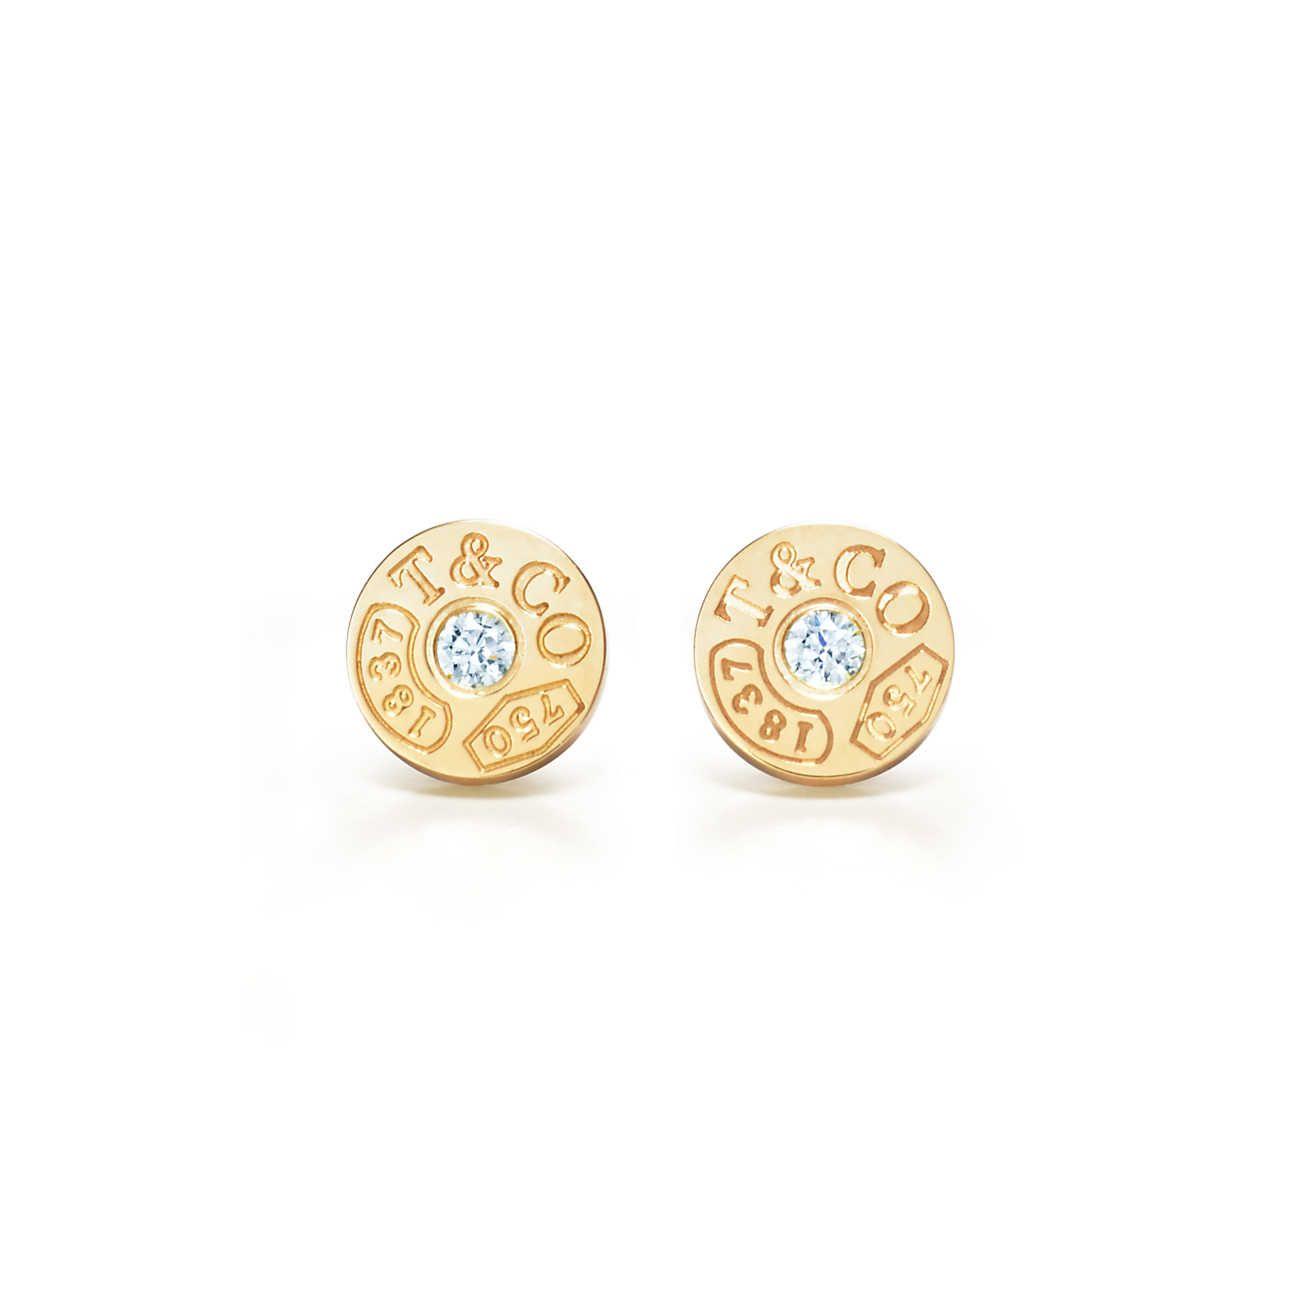 Tiffany Diamonds Logo - Tiffany 1837™ circle earrings in 18k gold with diamonds. | Tiffany & Co.